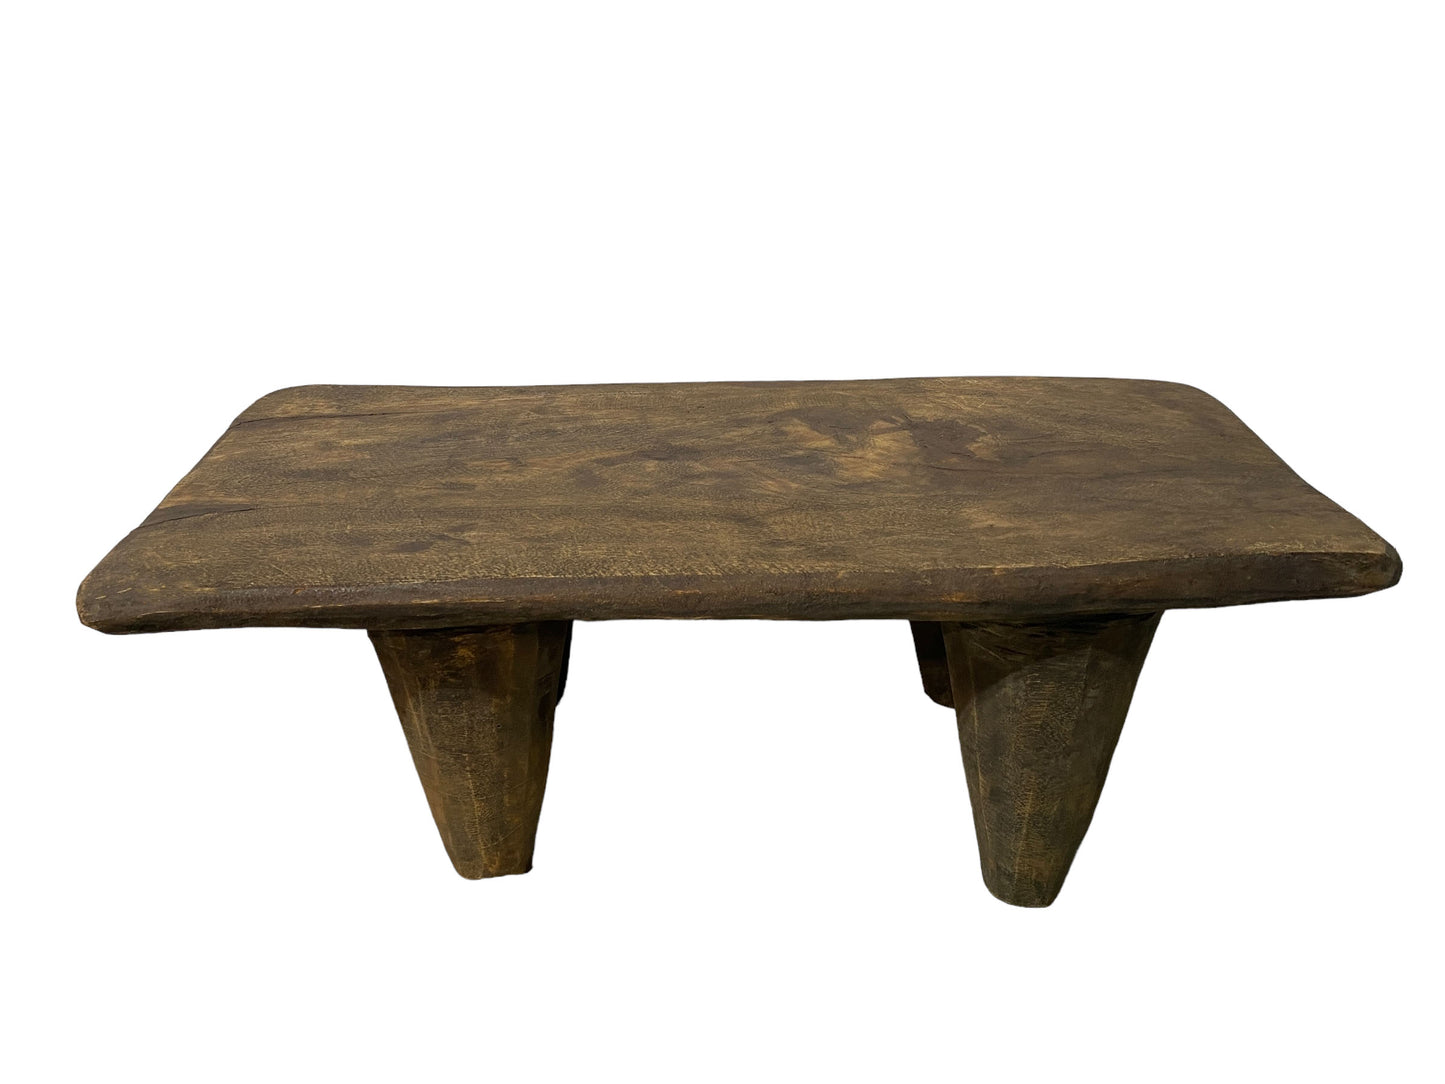 # 5532 Superb Rustic Vintage   African Senufo Stool / Table  I coast 23" W